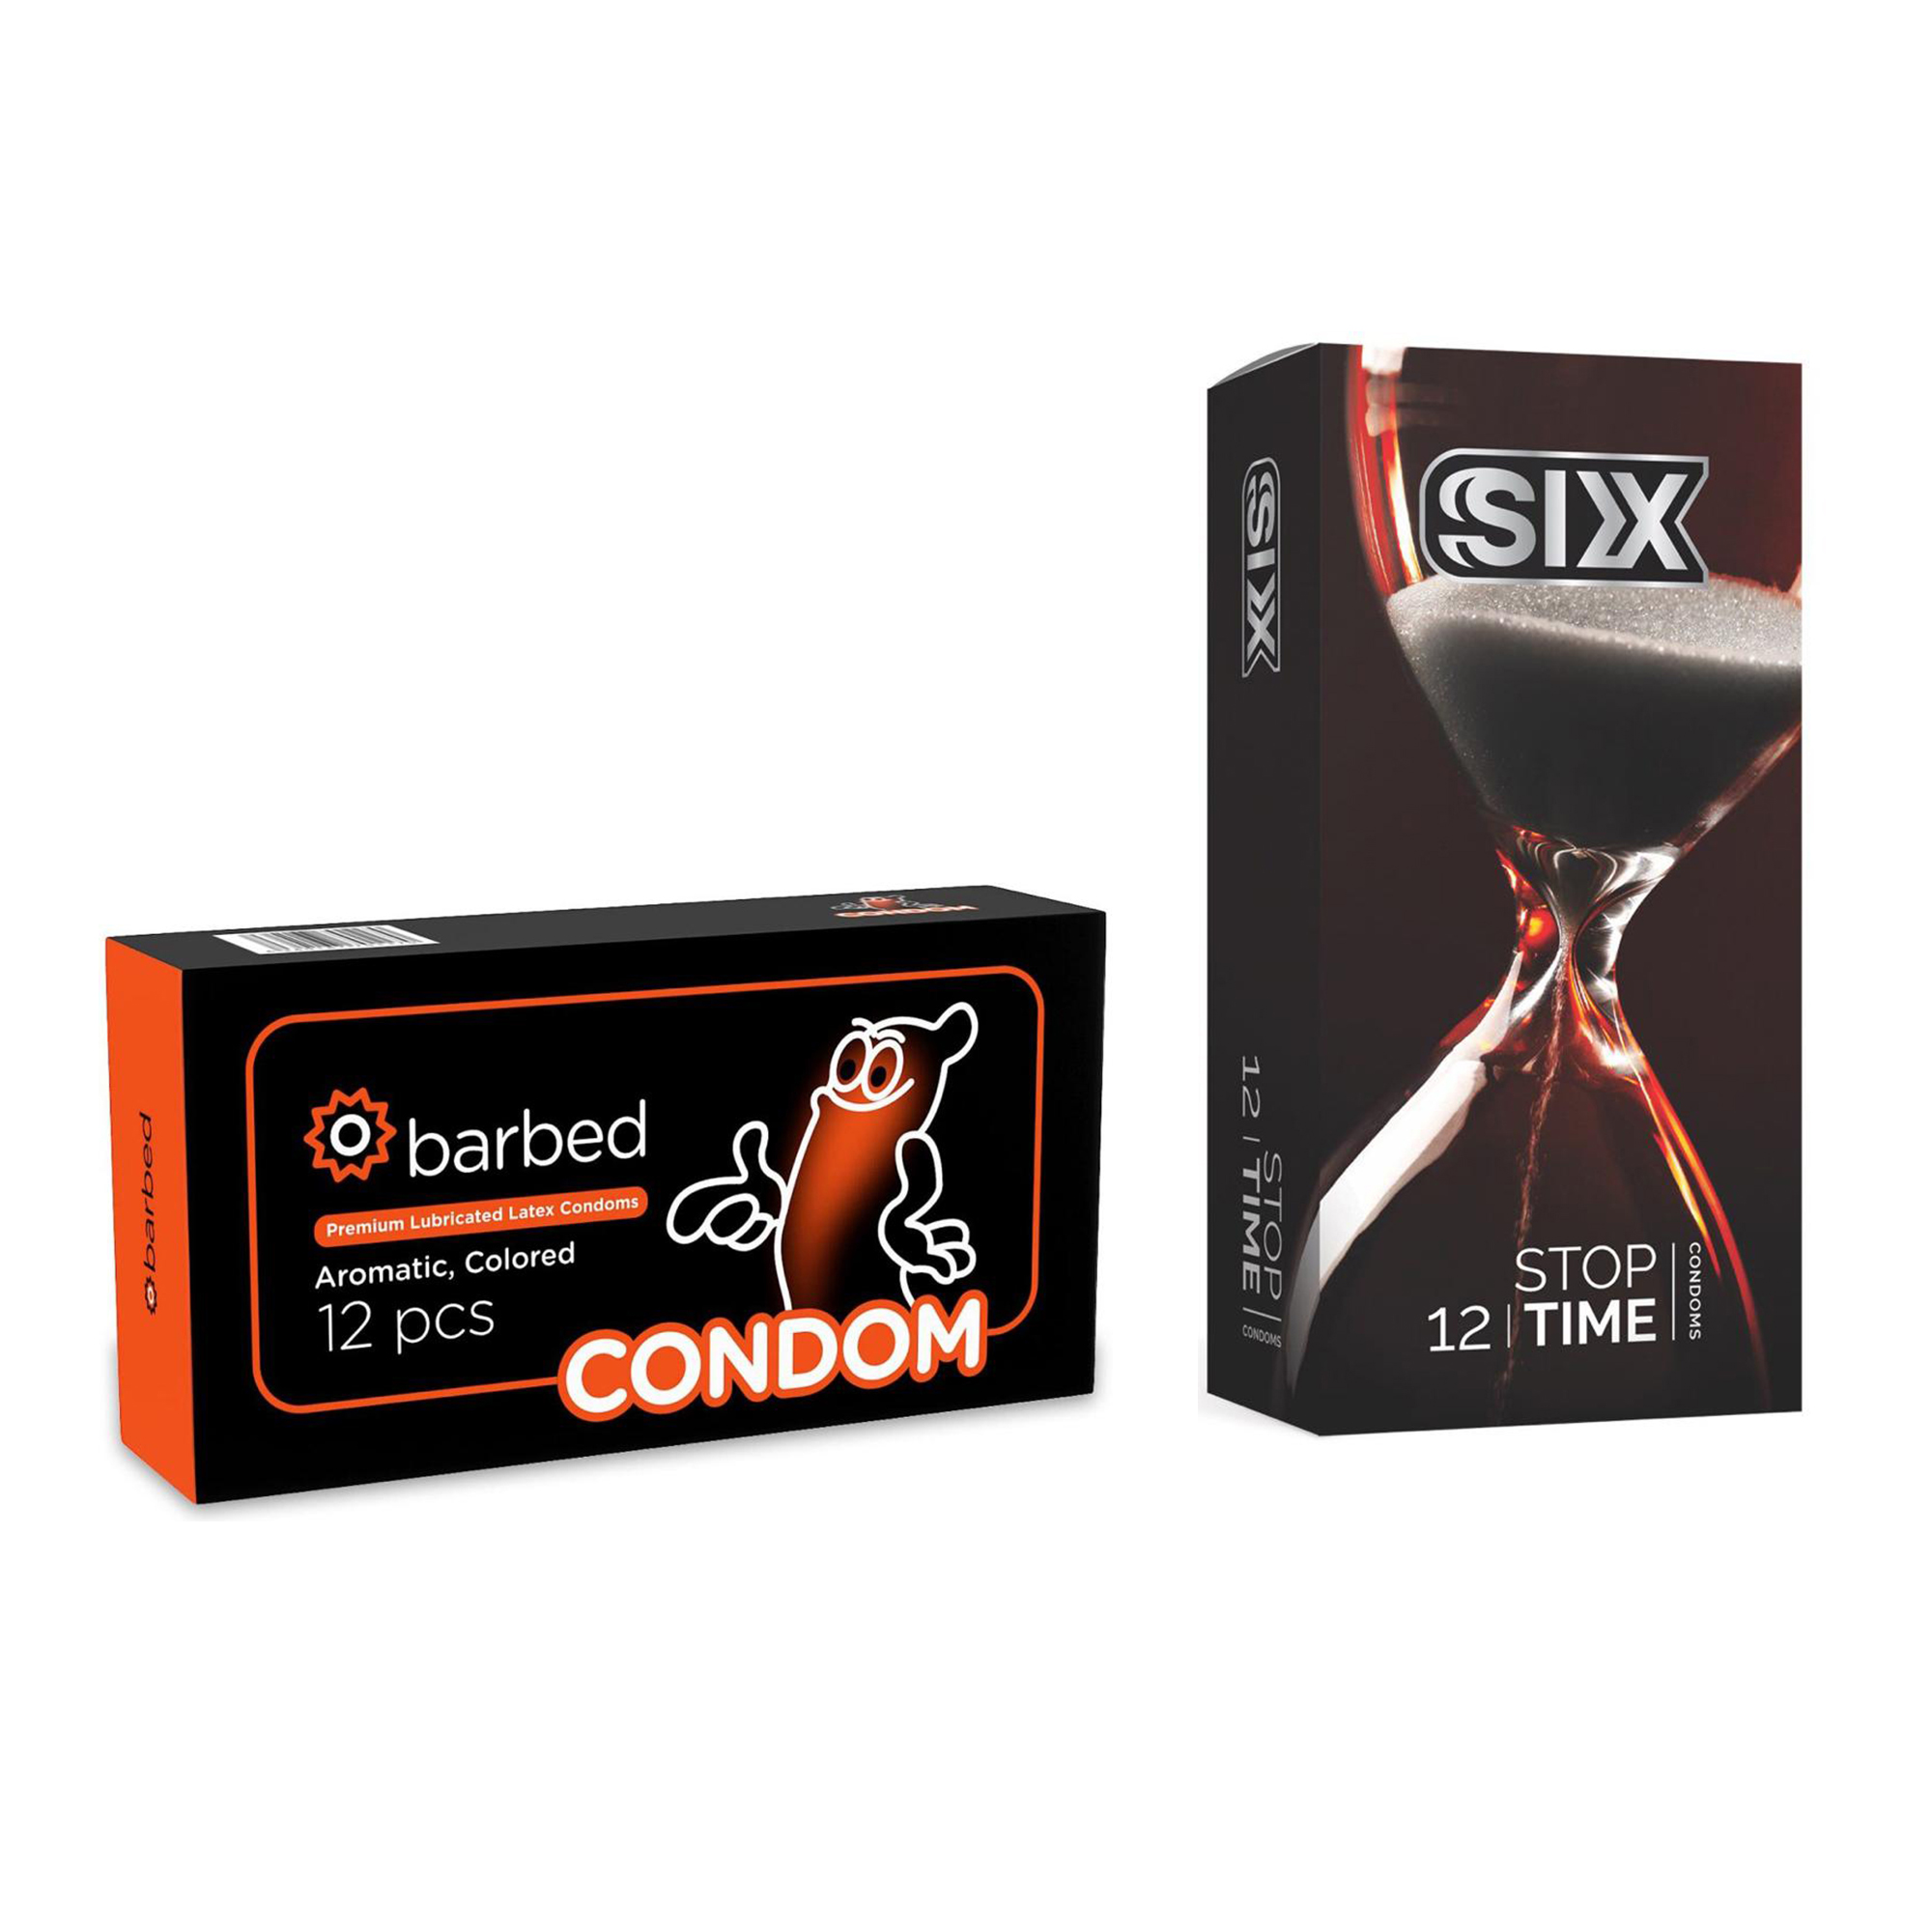 کاندوم سیکس مدل Stop Time بسته 12 عددی به همراه کاندوم کاندوم مدل Barbed بسته 12 عددی